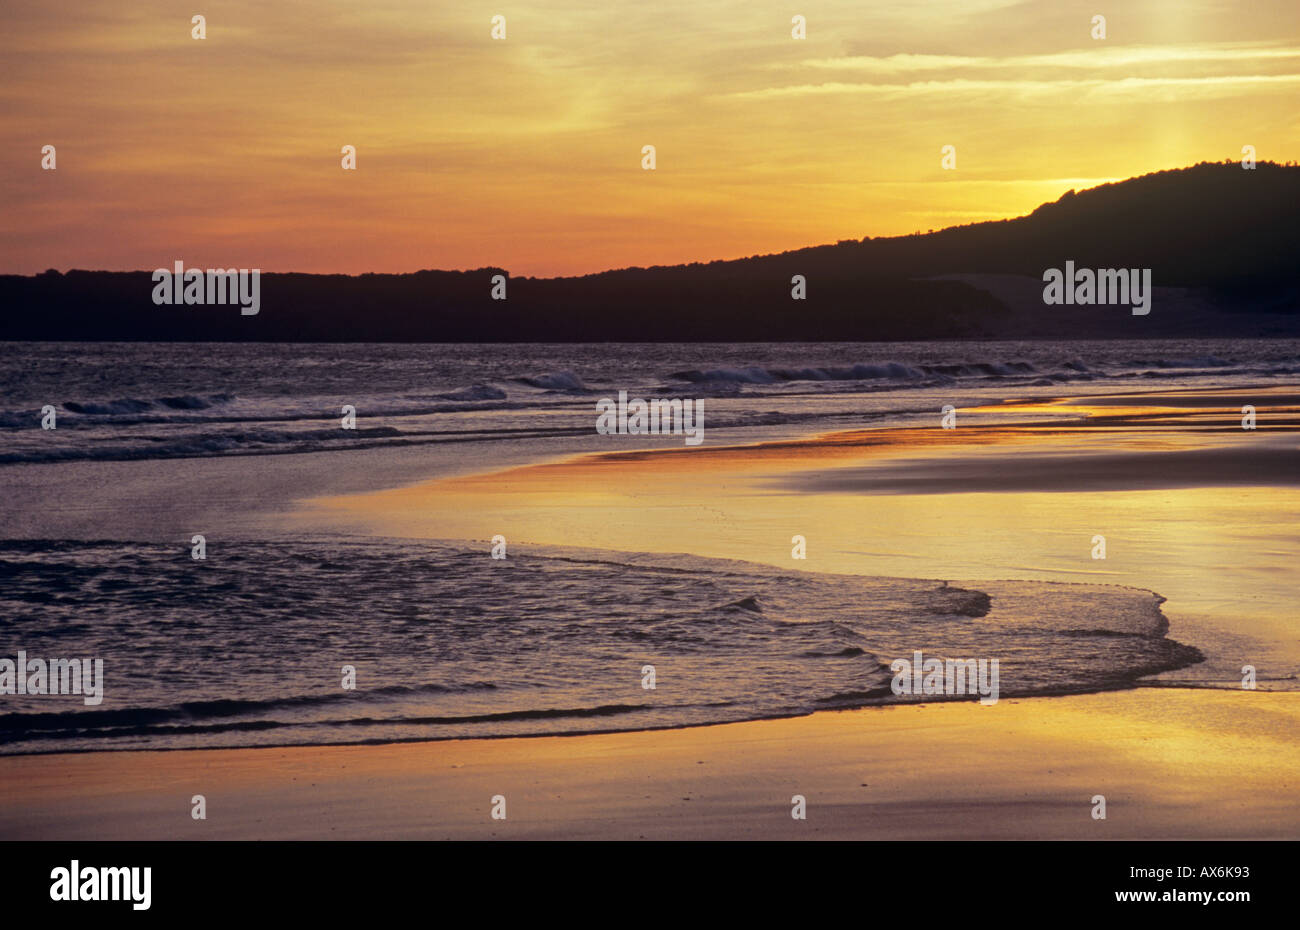 Costa del la luz, la plage et le coucher du soleil, Andalousie, espagne. Banque D'Images